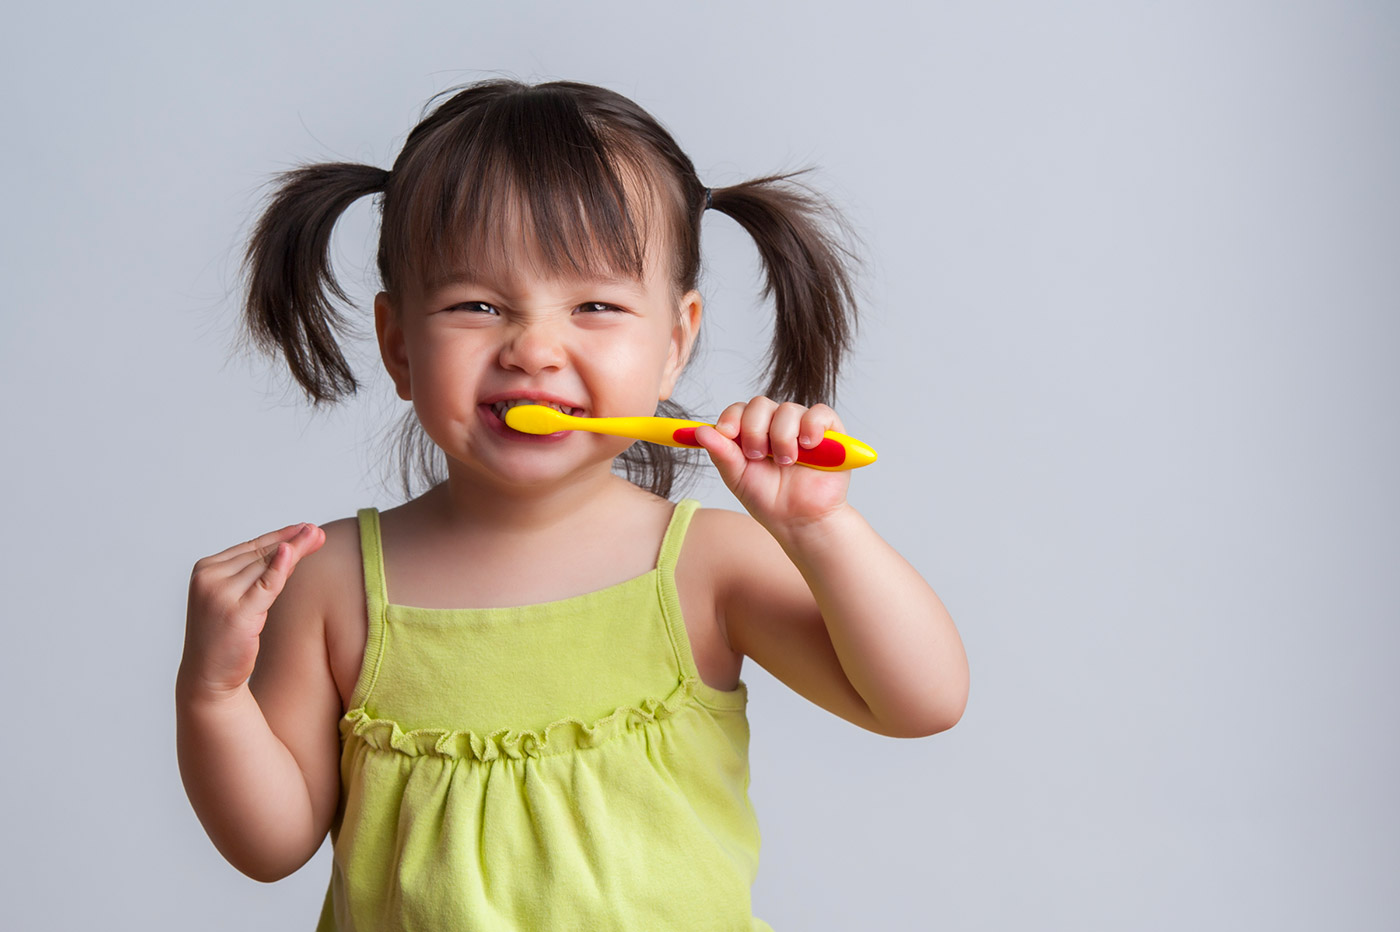 Primera visita al dentista, niña con coletas muy graciosa simulando que se cepilla los dientes